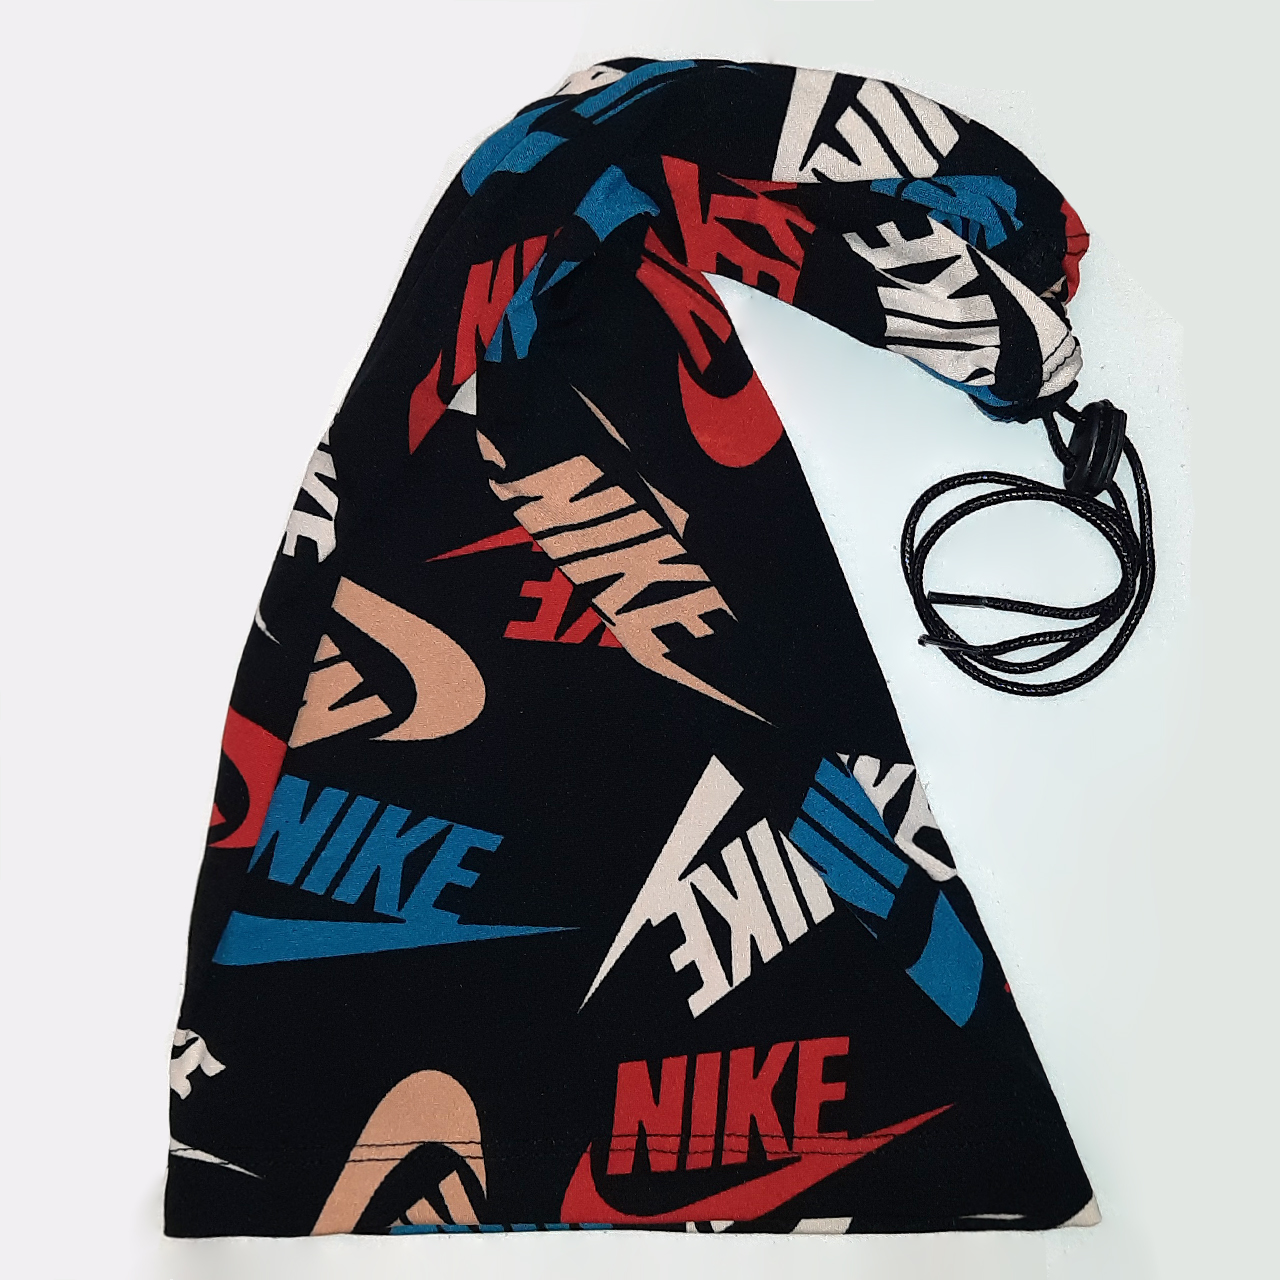 دستمال سر و گردن مدل Nike-30